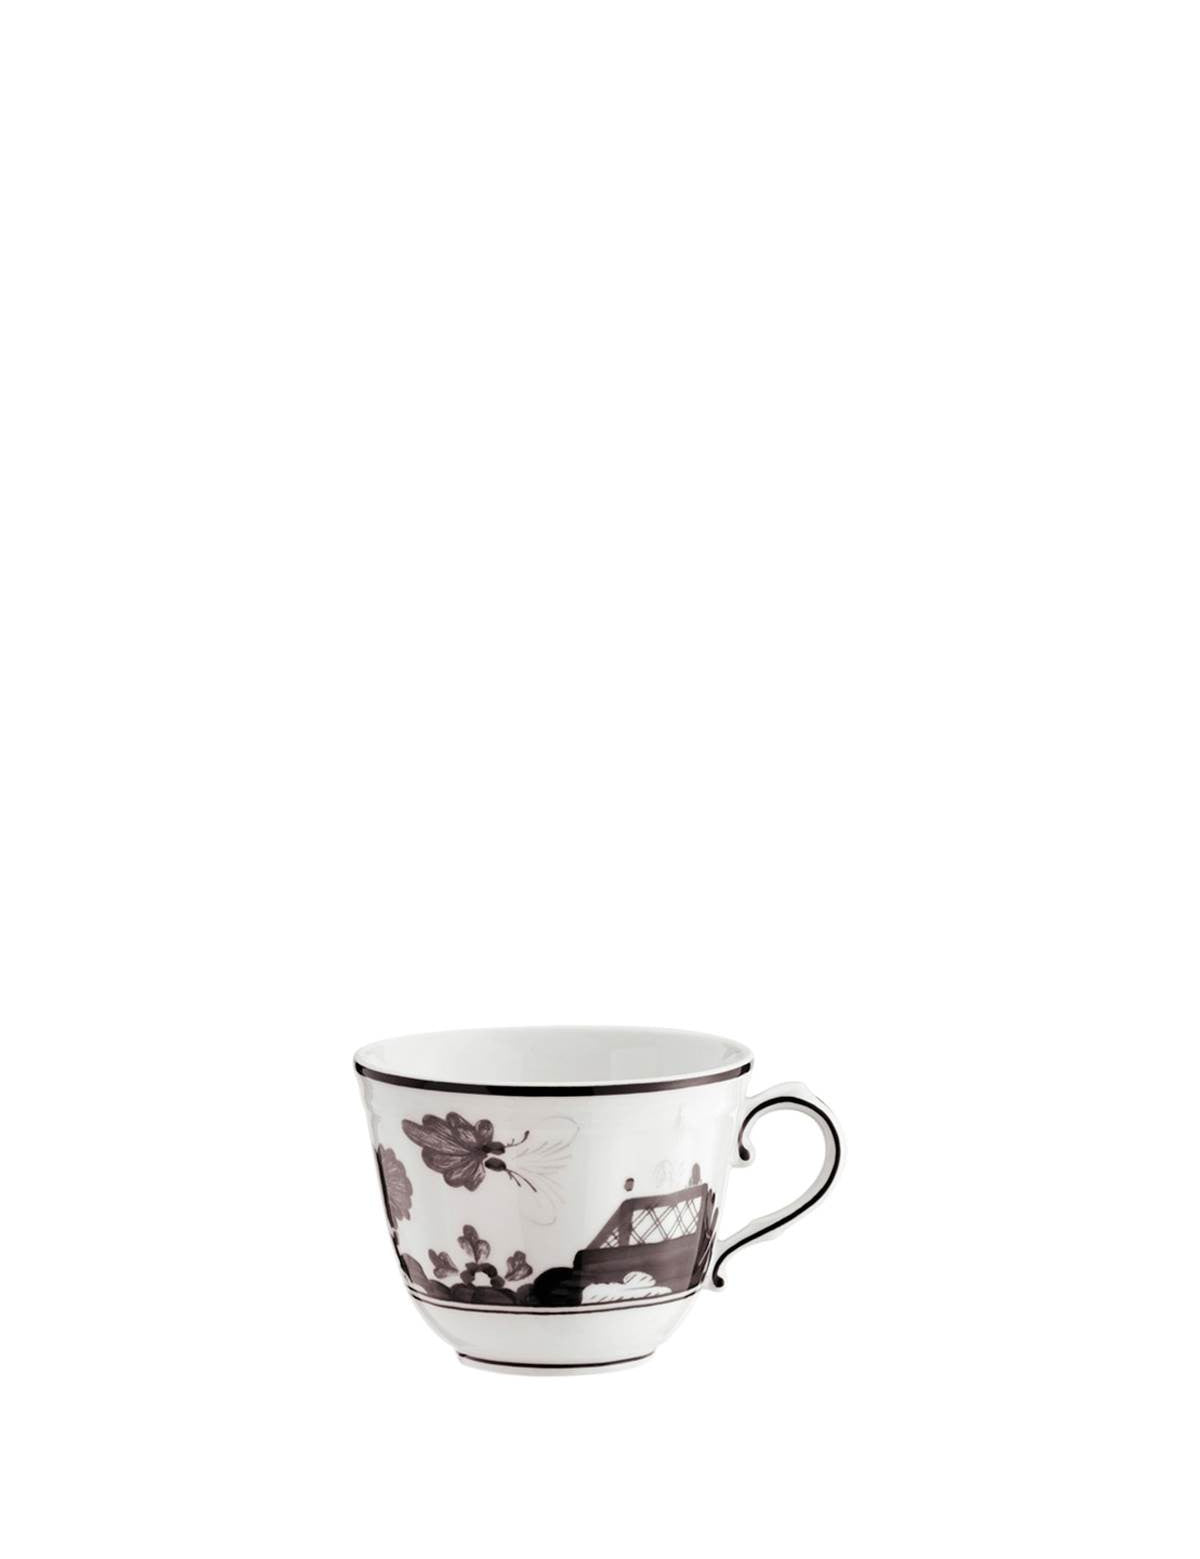 ginori-1735-oriente-italiano-coffee-cup.jpg